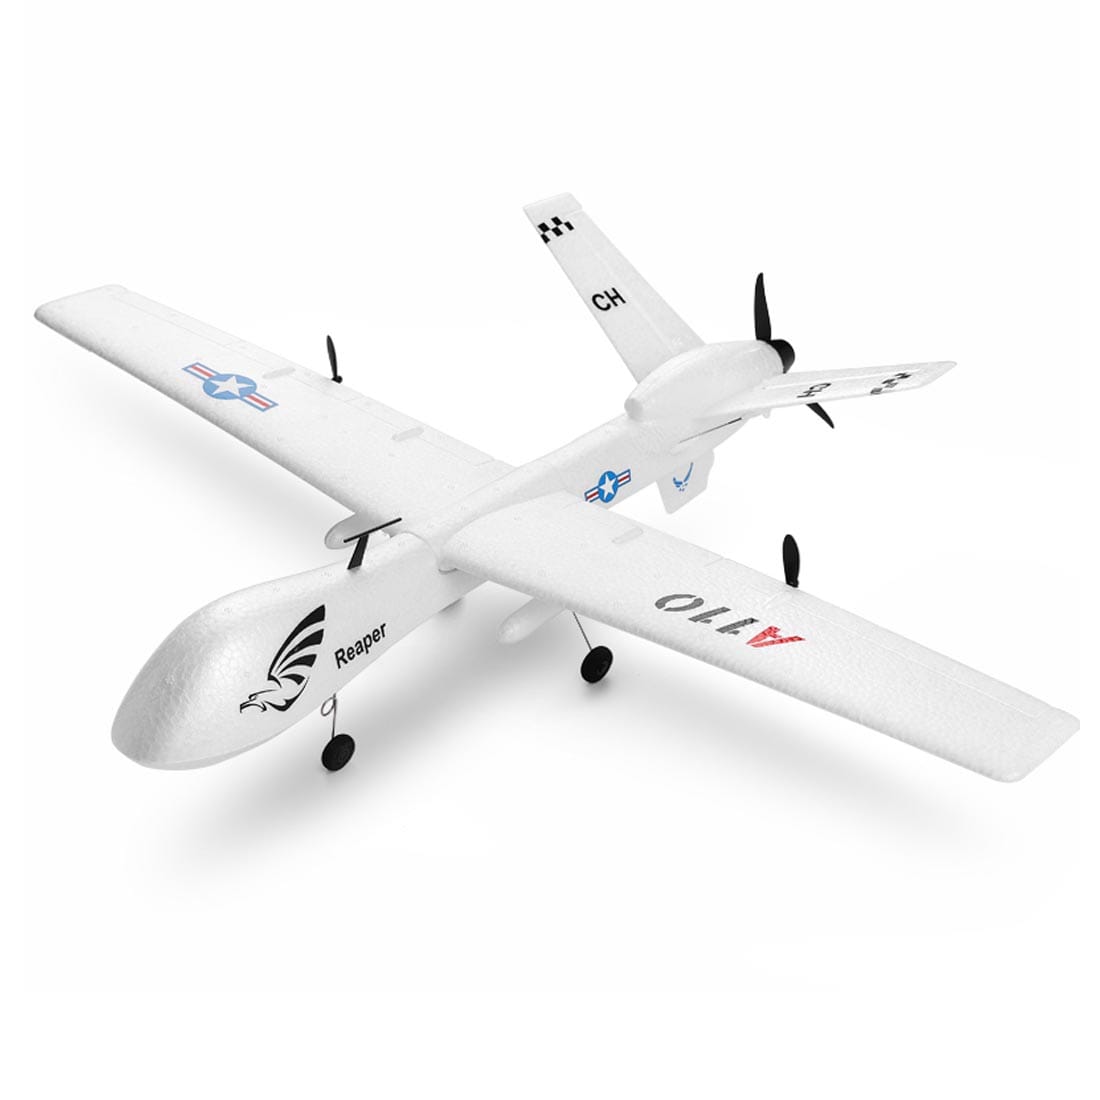 A110 rc drone avion télécommandé 3 voies